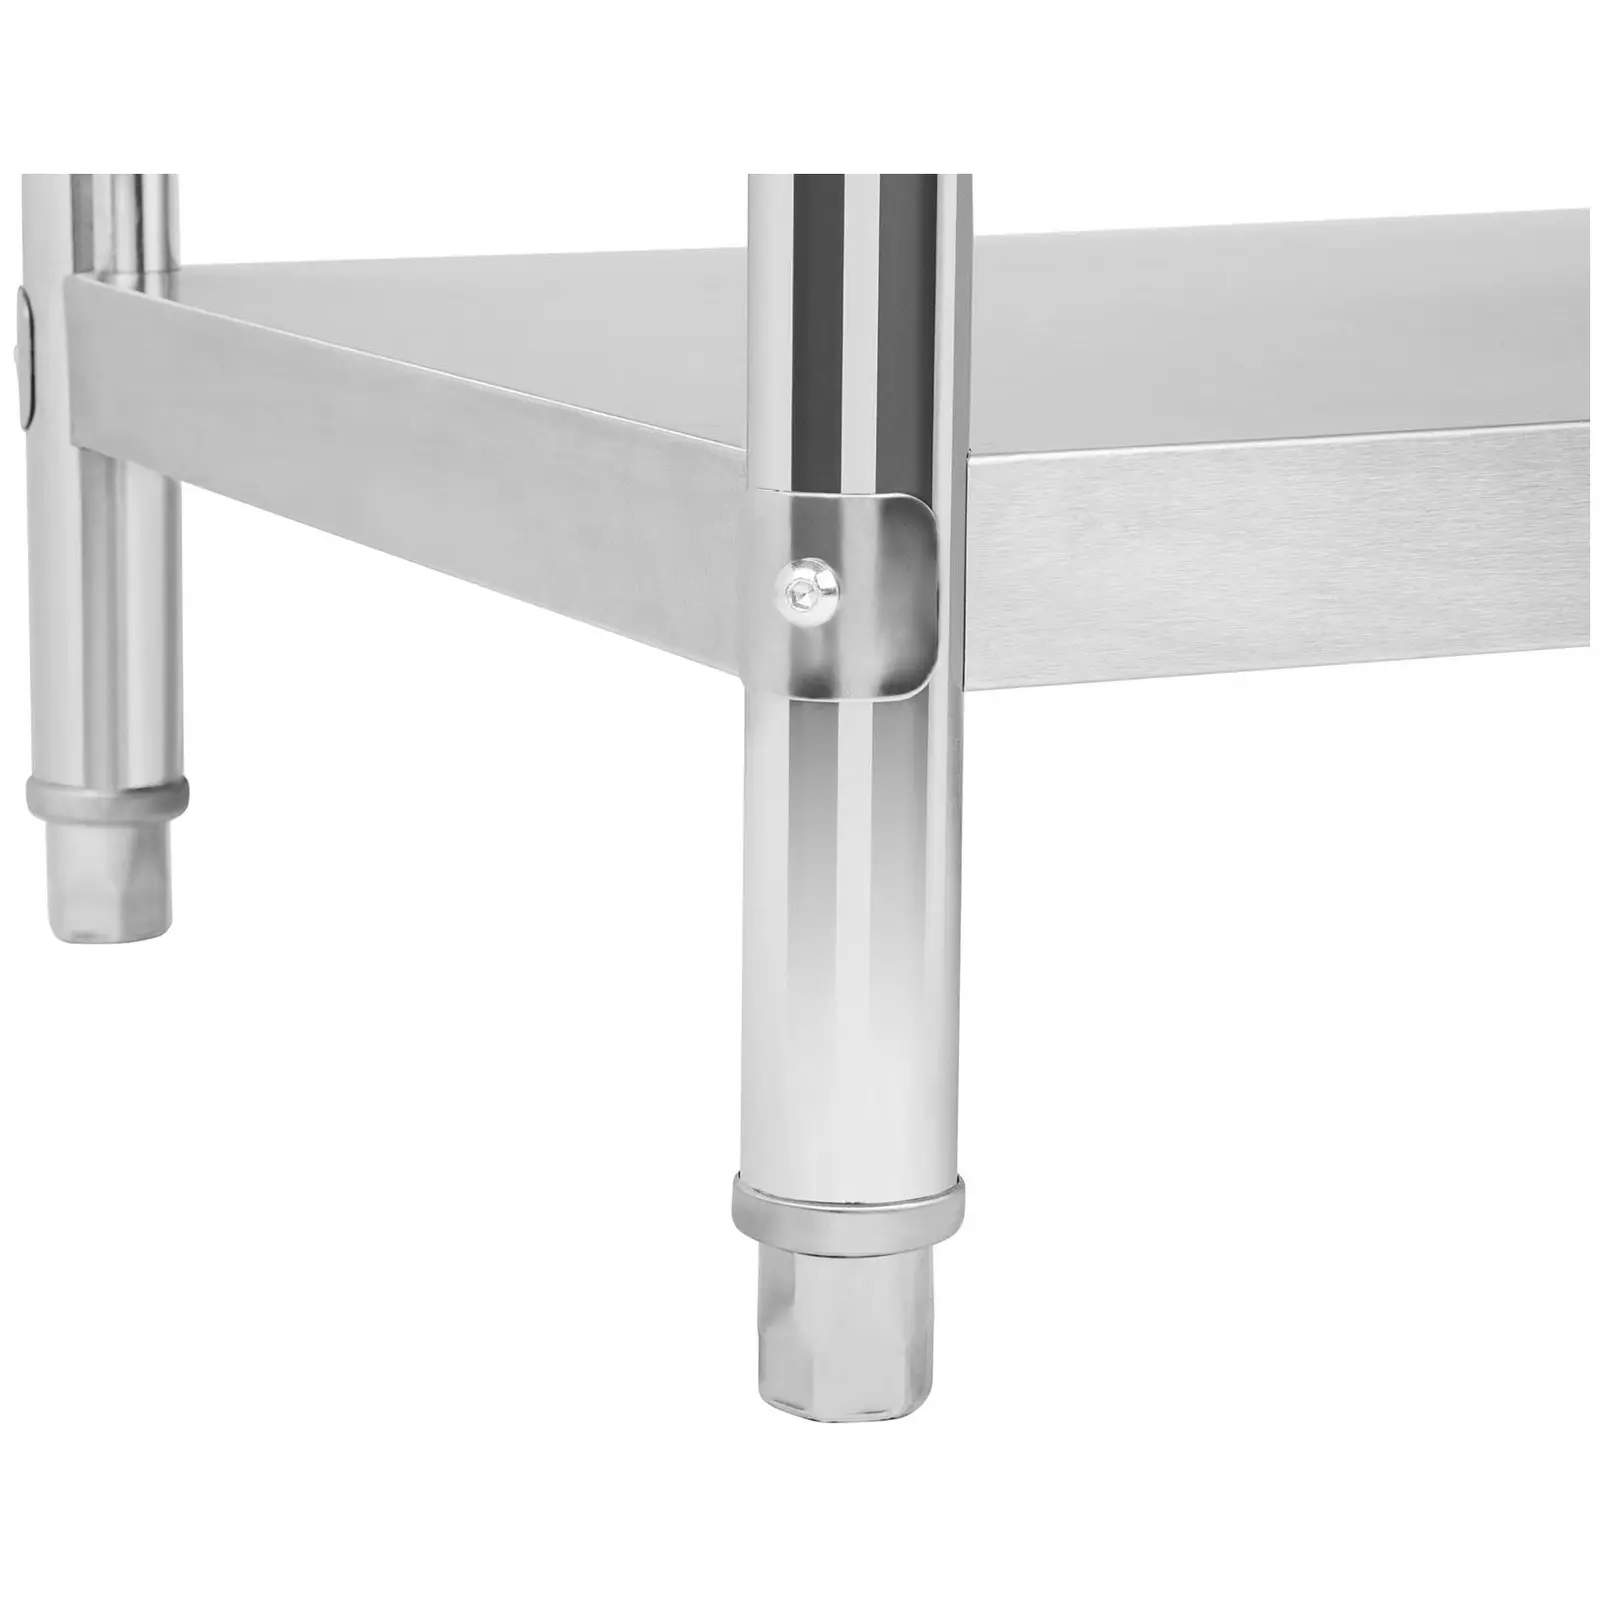 Pracovní stůl z ušlechtilé oceli - 150 x 60 cm - s lemem - 130 kg